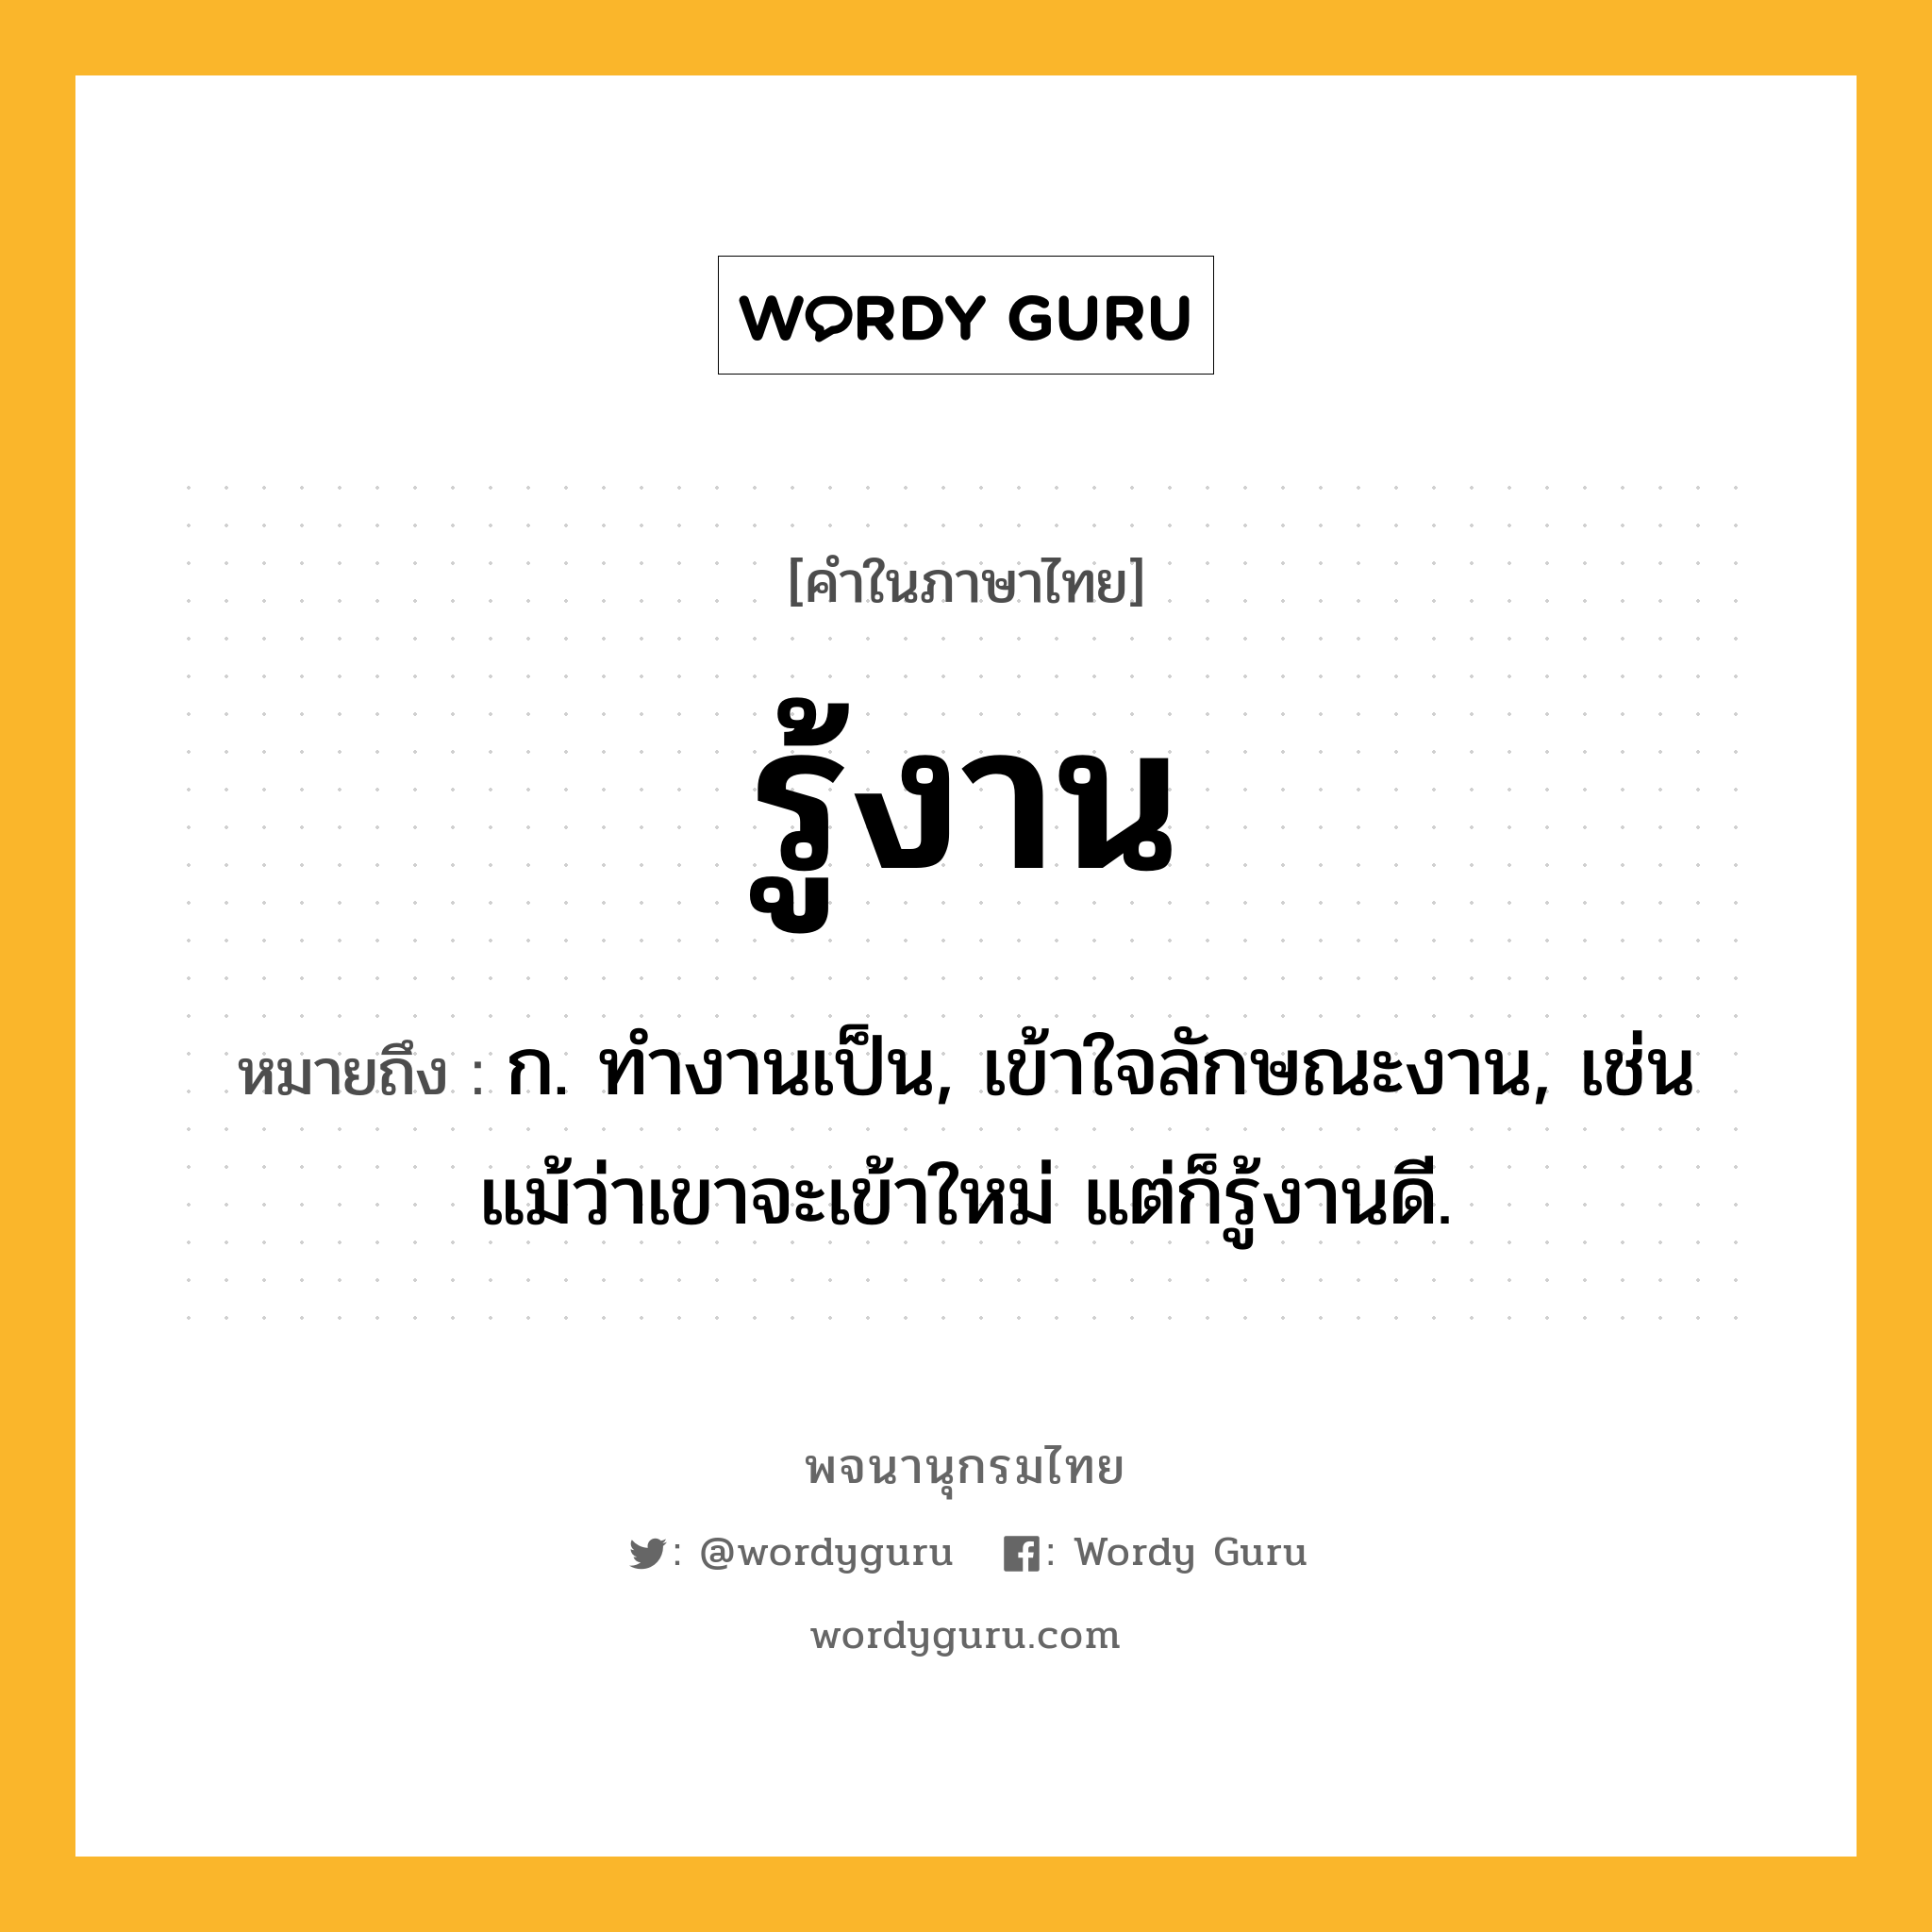 รู้งาน หมายถึงอะไร?, คำในภาษาไทย รู้งาน หมายถึง ก. ทำงานเป็น, เข้าใจลักษณะงาน, เช่น แม้ว่าเขาจะเข้าใหม่ แต่ก็รู้งานดี.